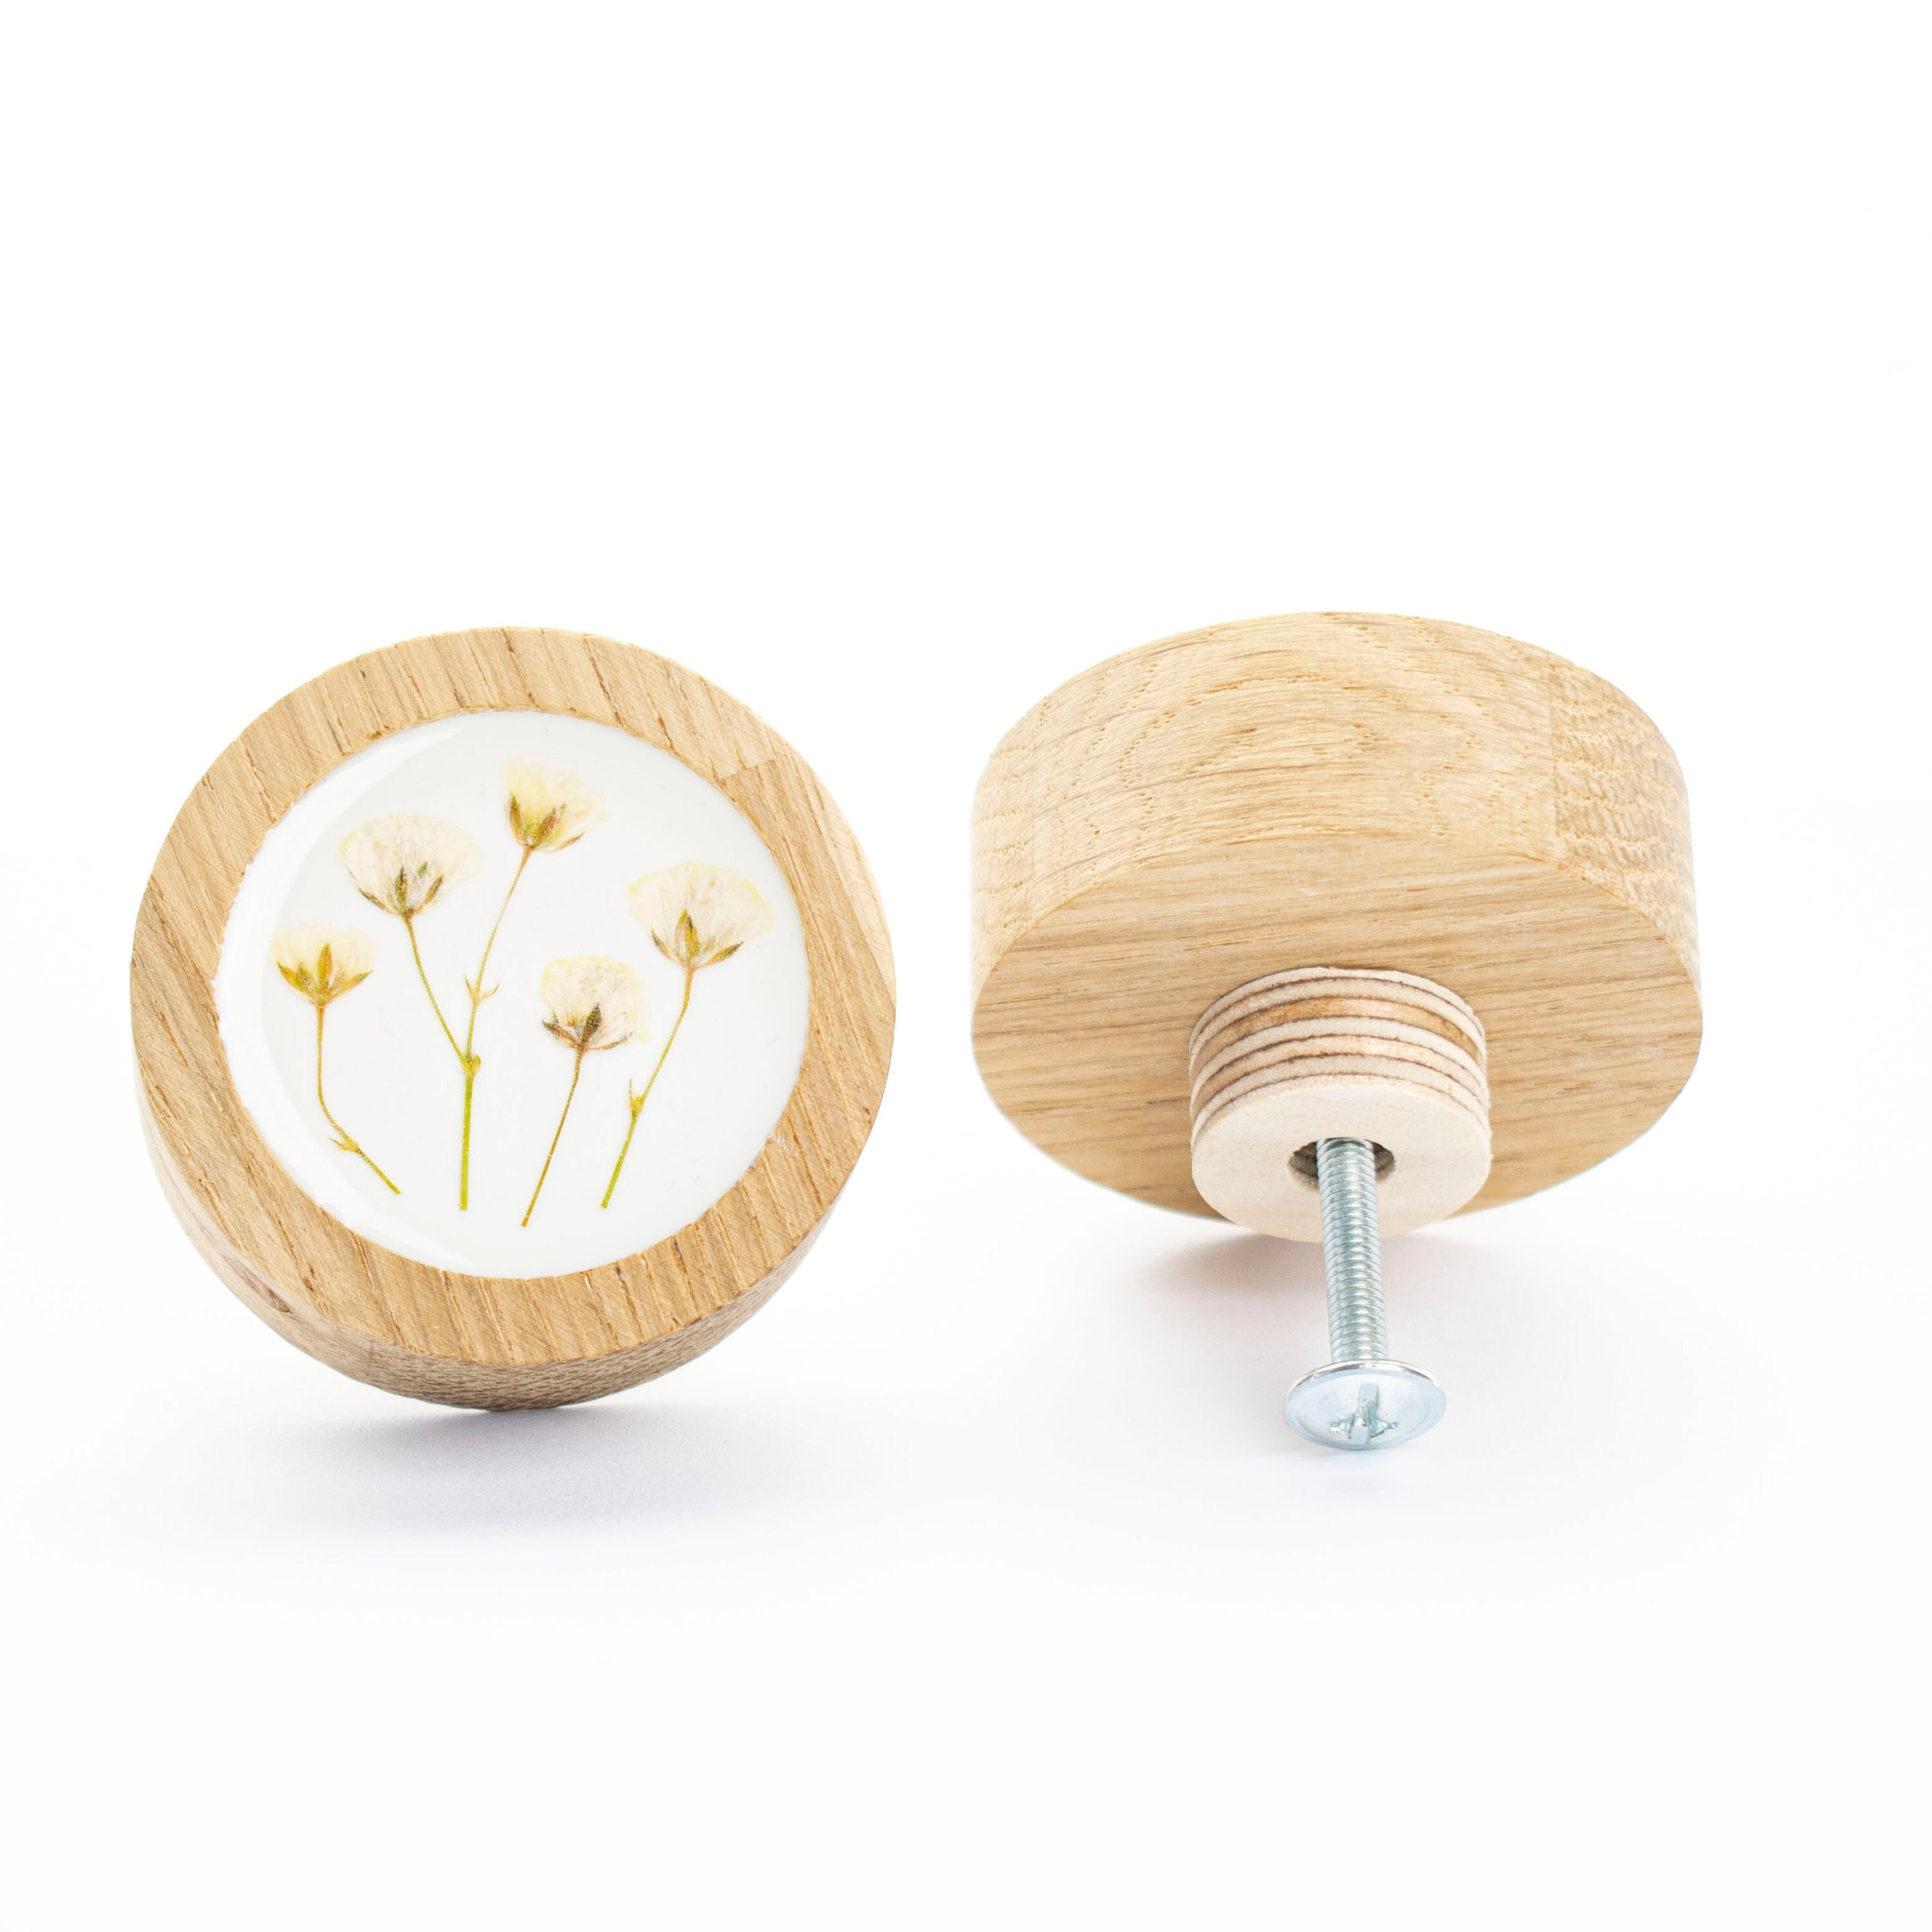 bouton de tiroir 5 cm/2 po. boho fleur séchée jaune bois de chêne avec résine époxy, bouton commode fleurie, design moderne, poignées tiroir